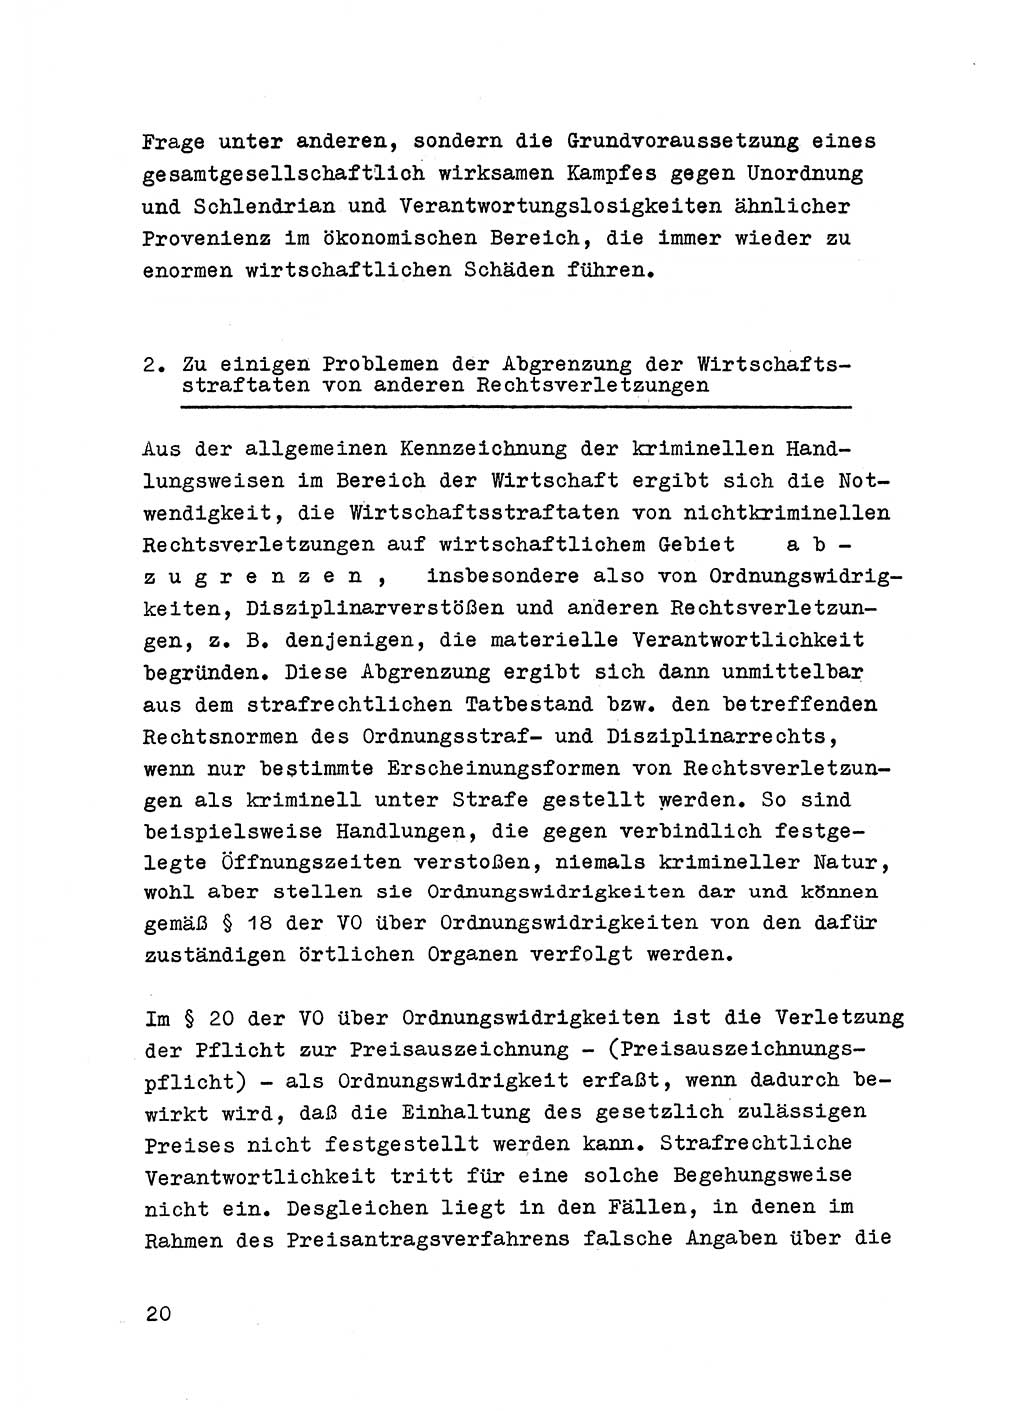 Strafrecht der DDR (Deutsche Demokratische Republik), Besonderer Teil, Lehrmaterial, Heft 6 1970, Seite 20 (Strafr. DDR BT Lehrmat. H. 6 1970, S. 20)